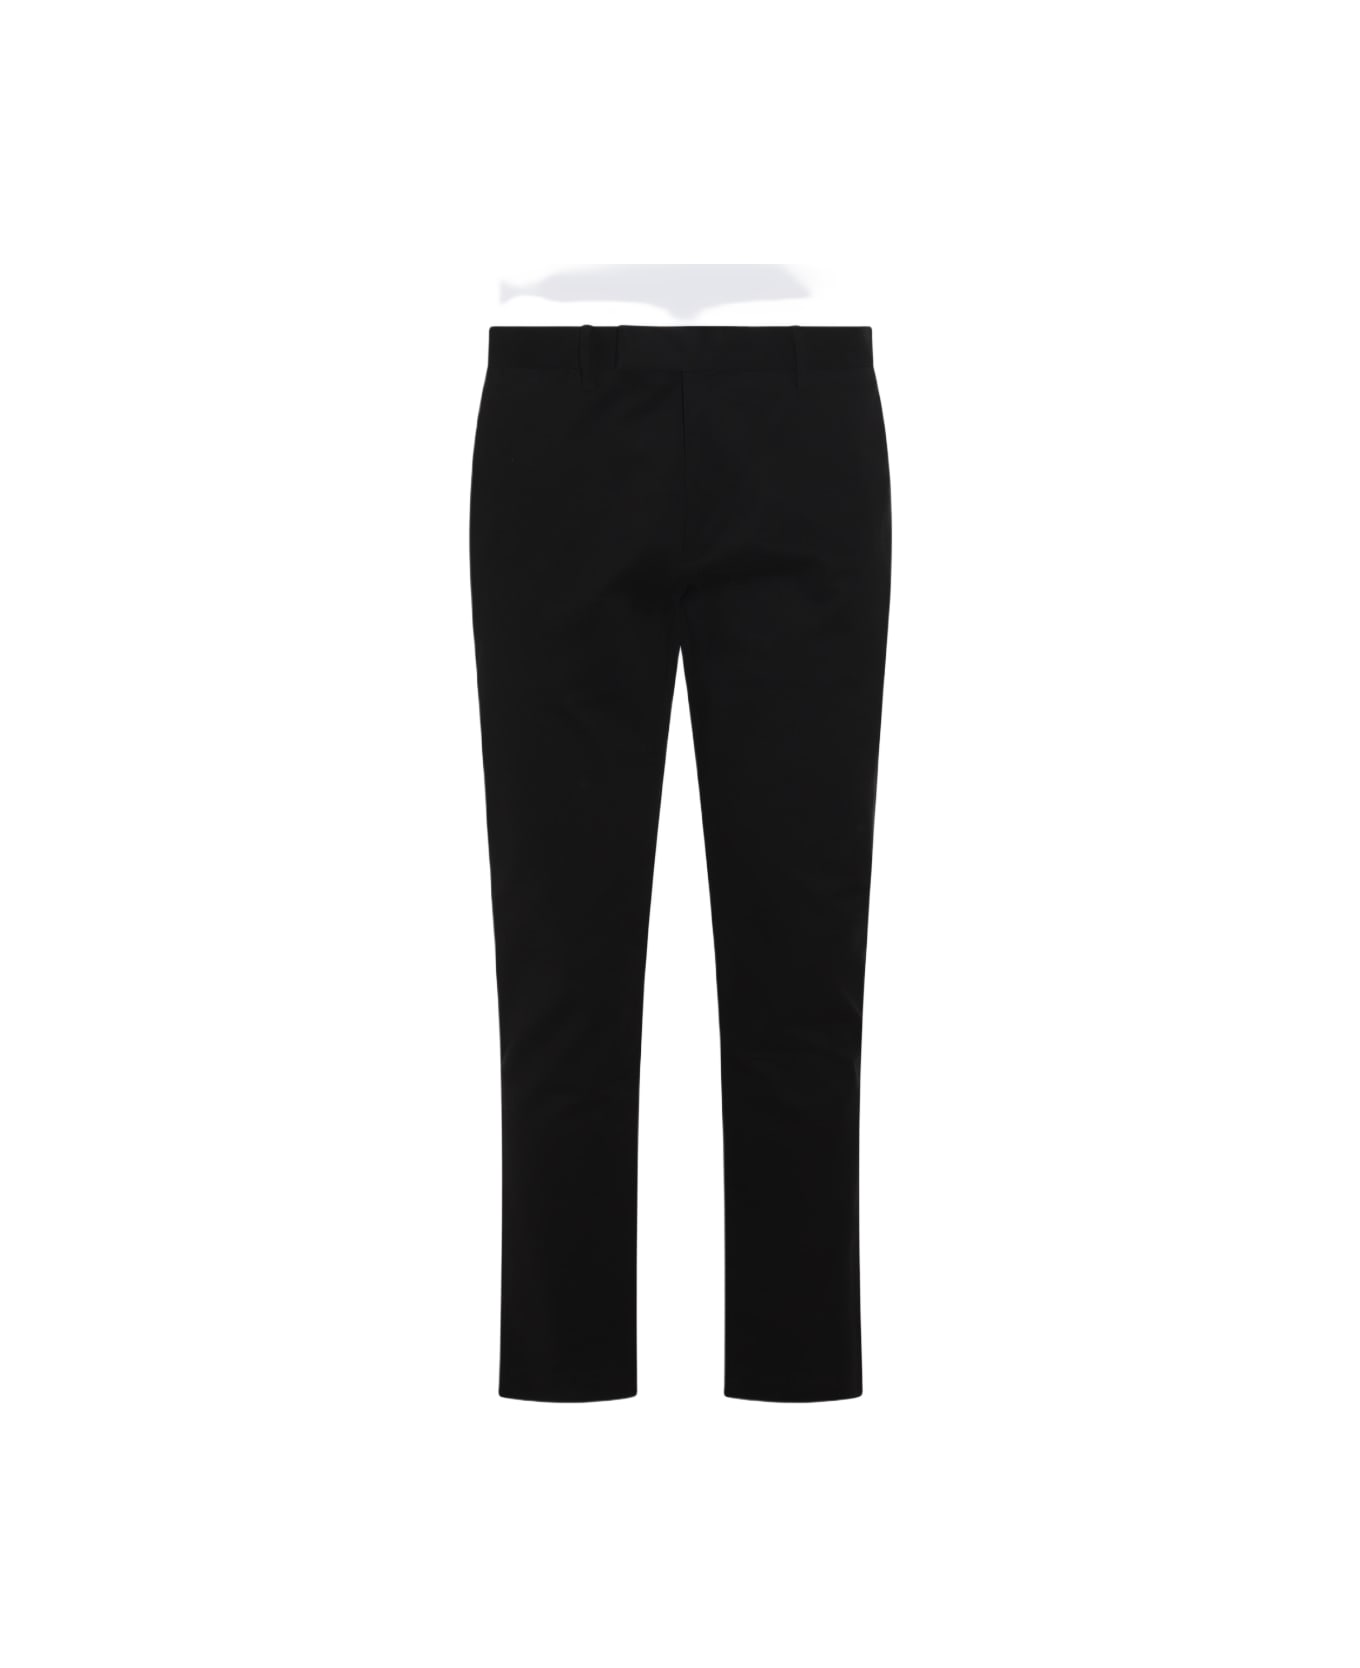 Polo Ralph Lauren Black Cotton Pants - POLO BLACK ボトムス